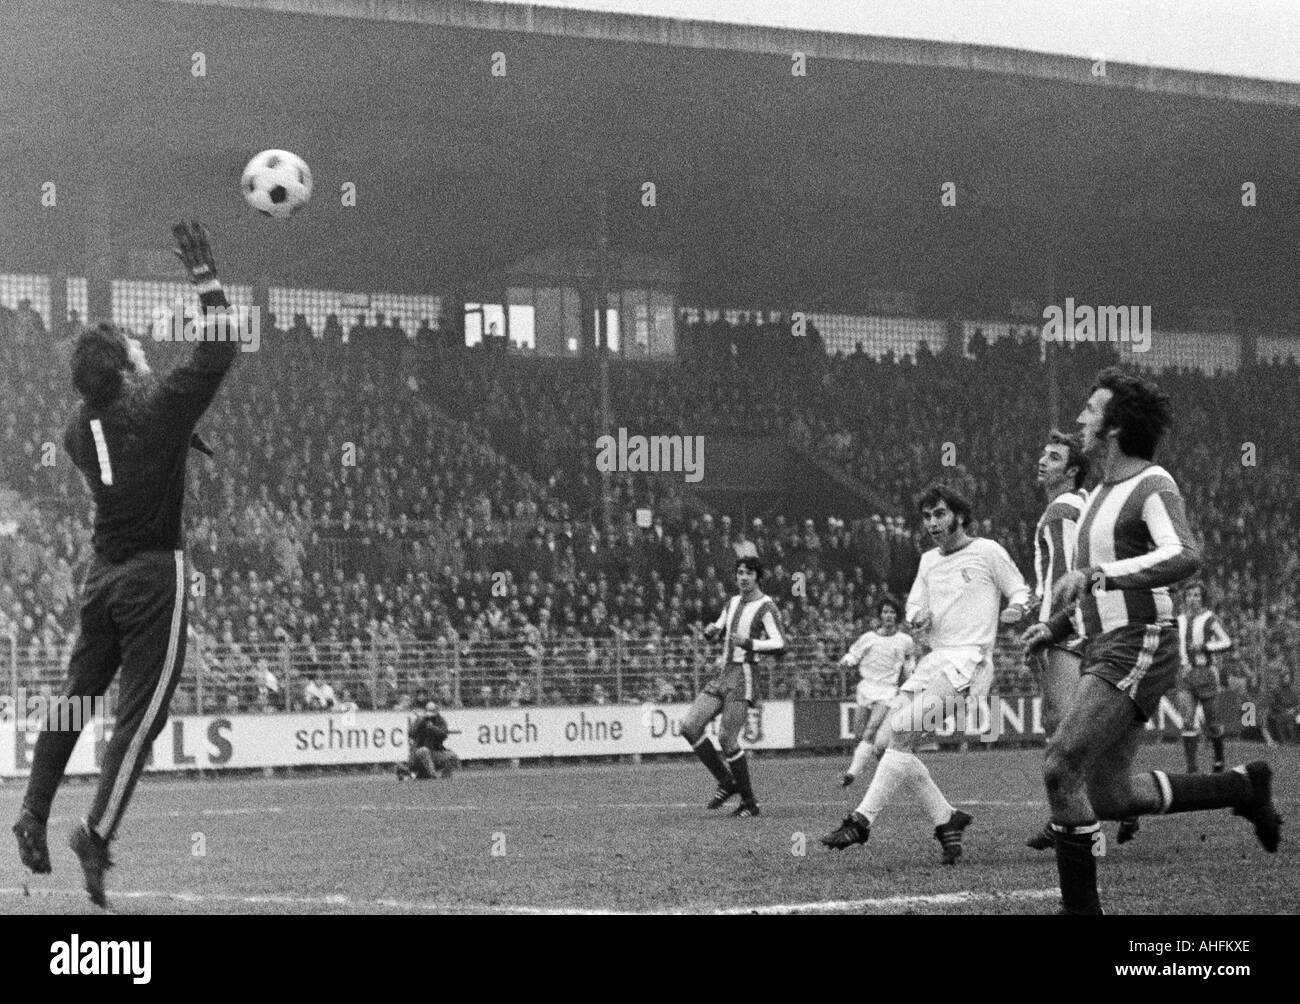 Football, Bundesliga, 1971/1972, VfL Bochum contre 1. FC Kaiserslautern 4:2, stade à l'Castroper Strasse à Bochum, scène du match, f.l.t.r. keeper Josef Elting (FCK), Karl Heinz Vogt (FCK), Werner balte (Bochum), Ernst Diehl (FCK), Guenther Rein Banque D'Images